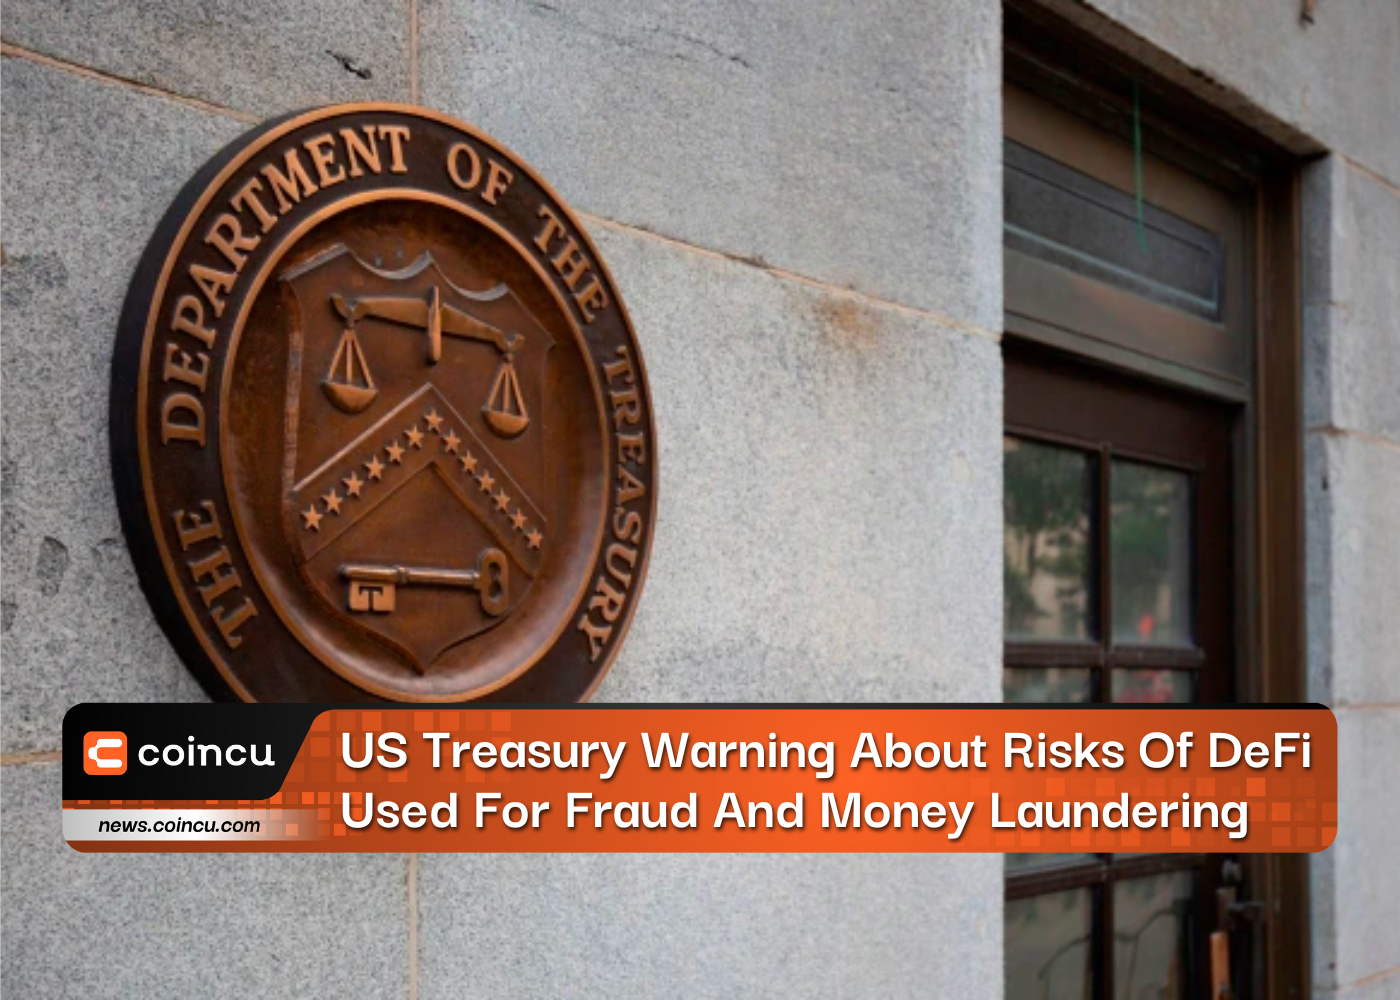 تحذير من وزارة الخزانة الأمريكية بشأن مخاطر استخدام التمويل اللامركزي في الاحتيال وغسل الأموال